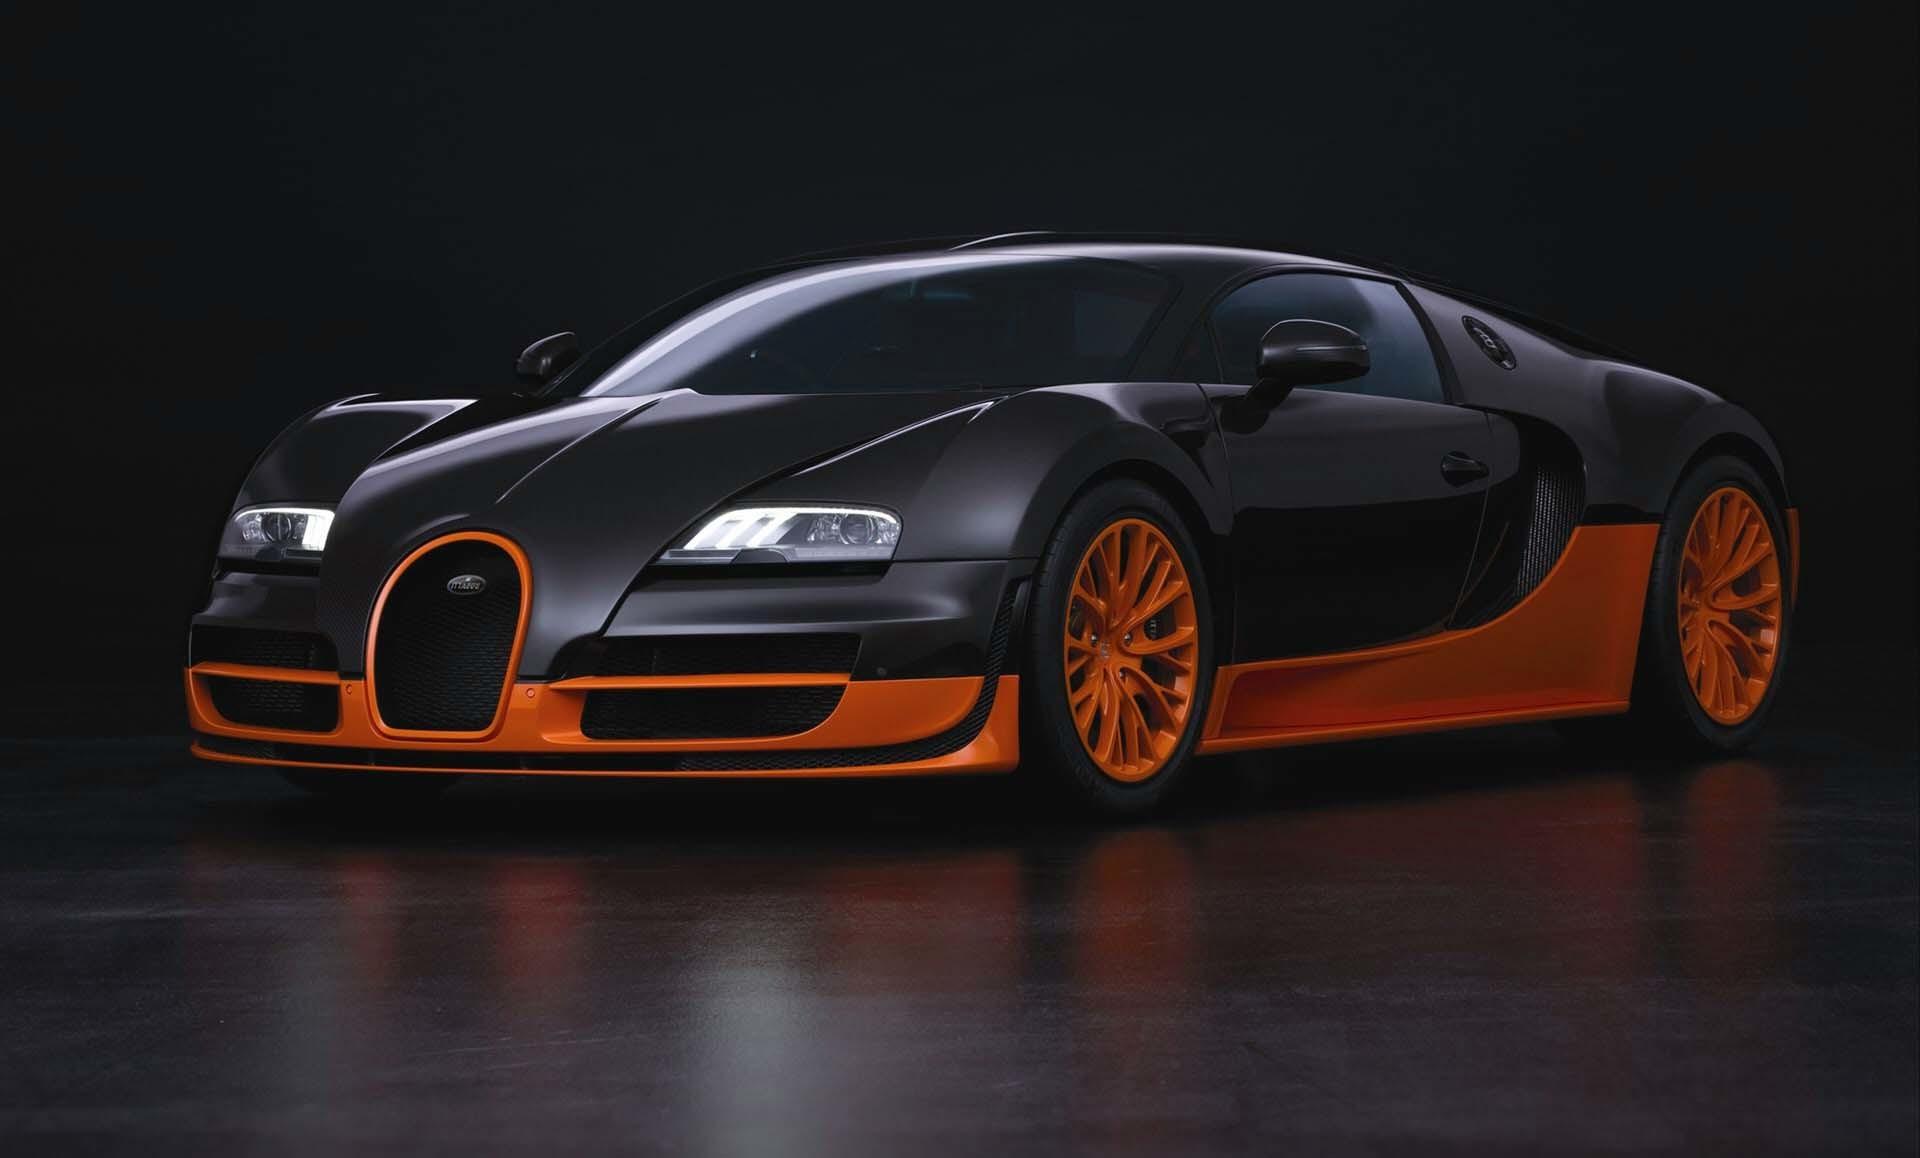 Bugatti Veyron Super Sport Wallpaper background picture